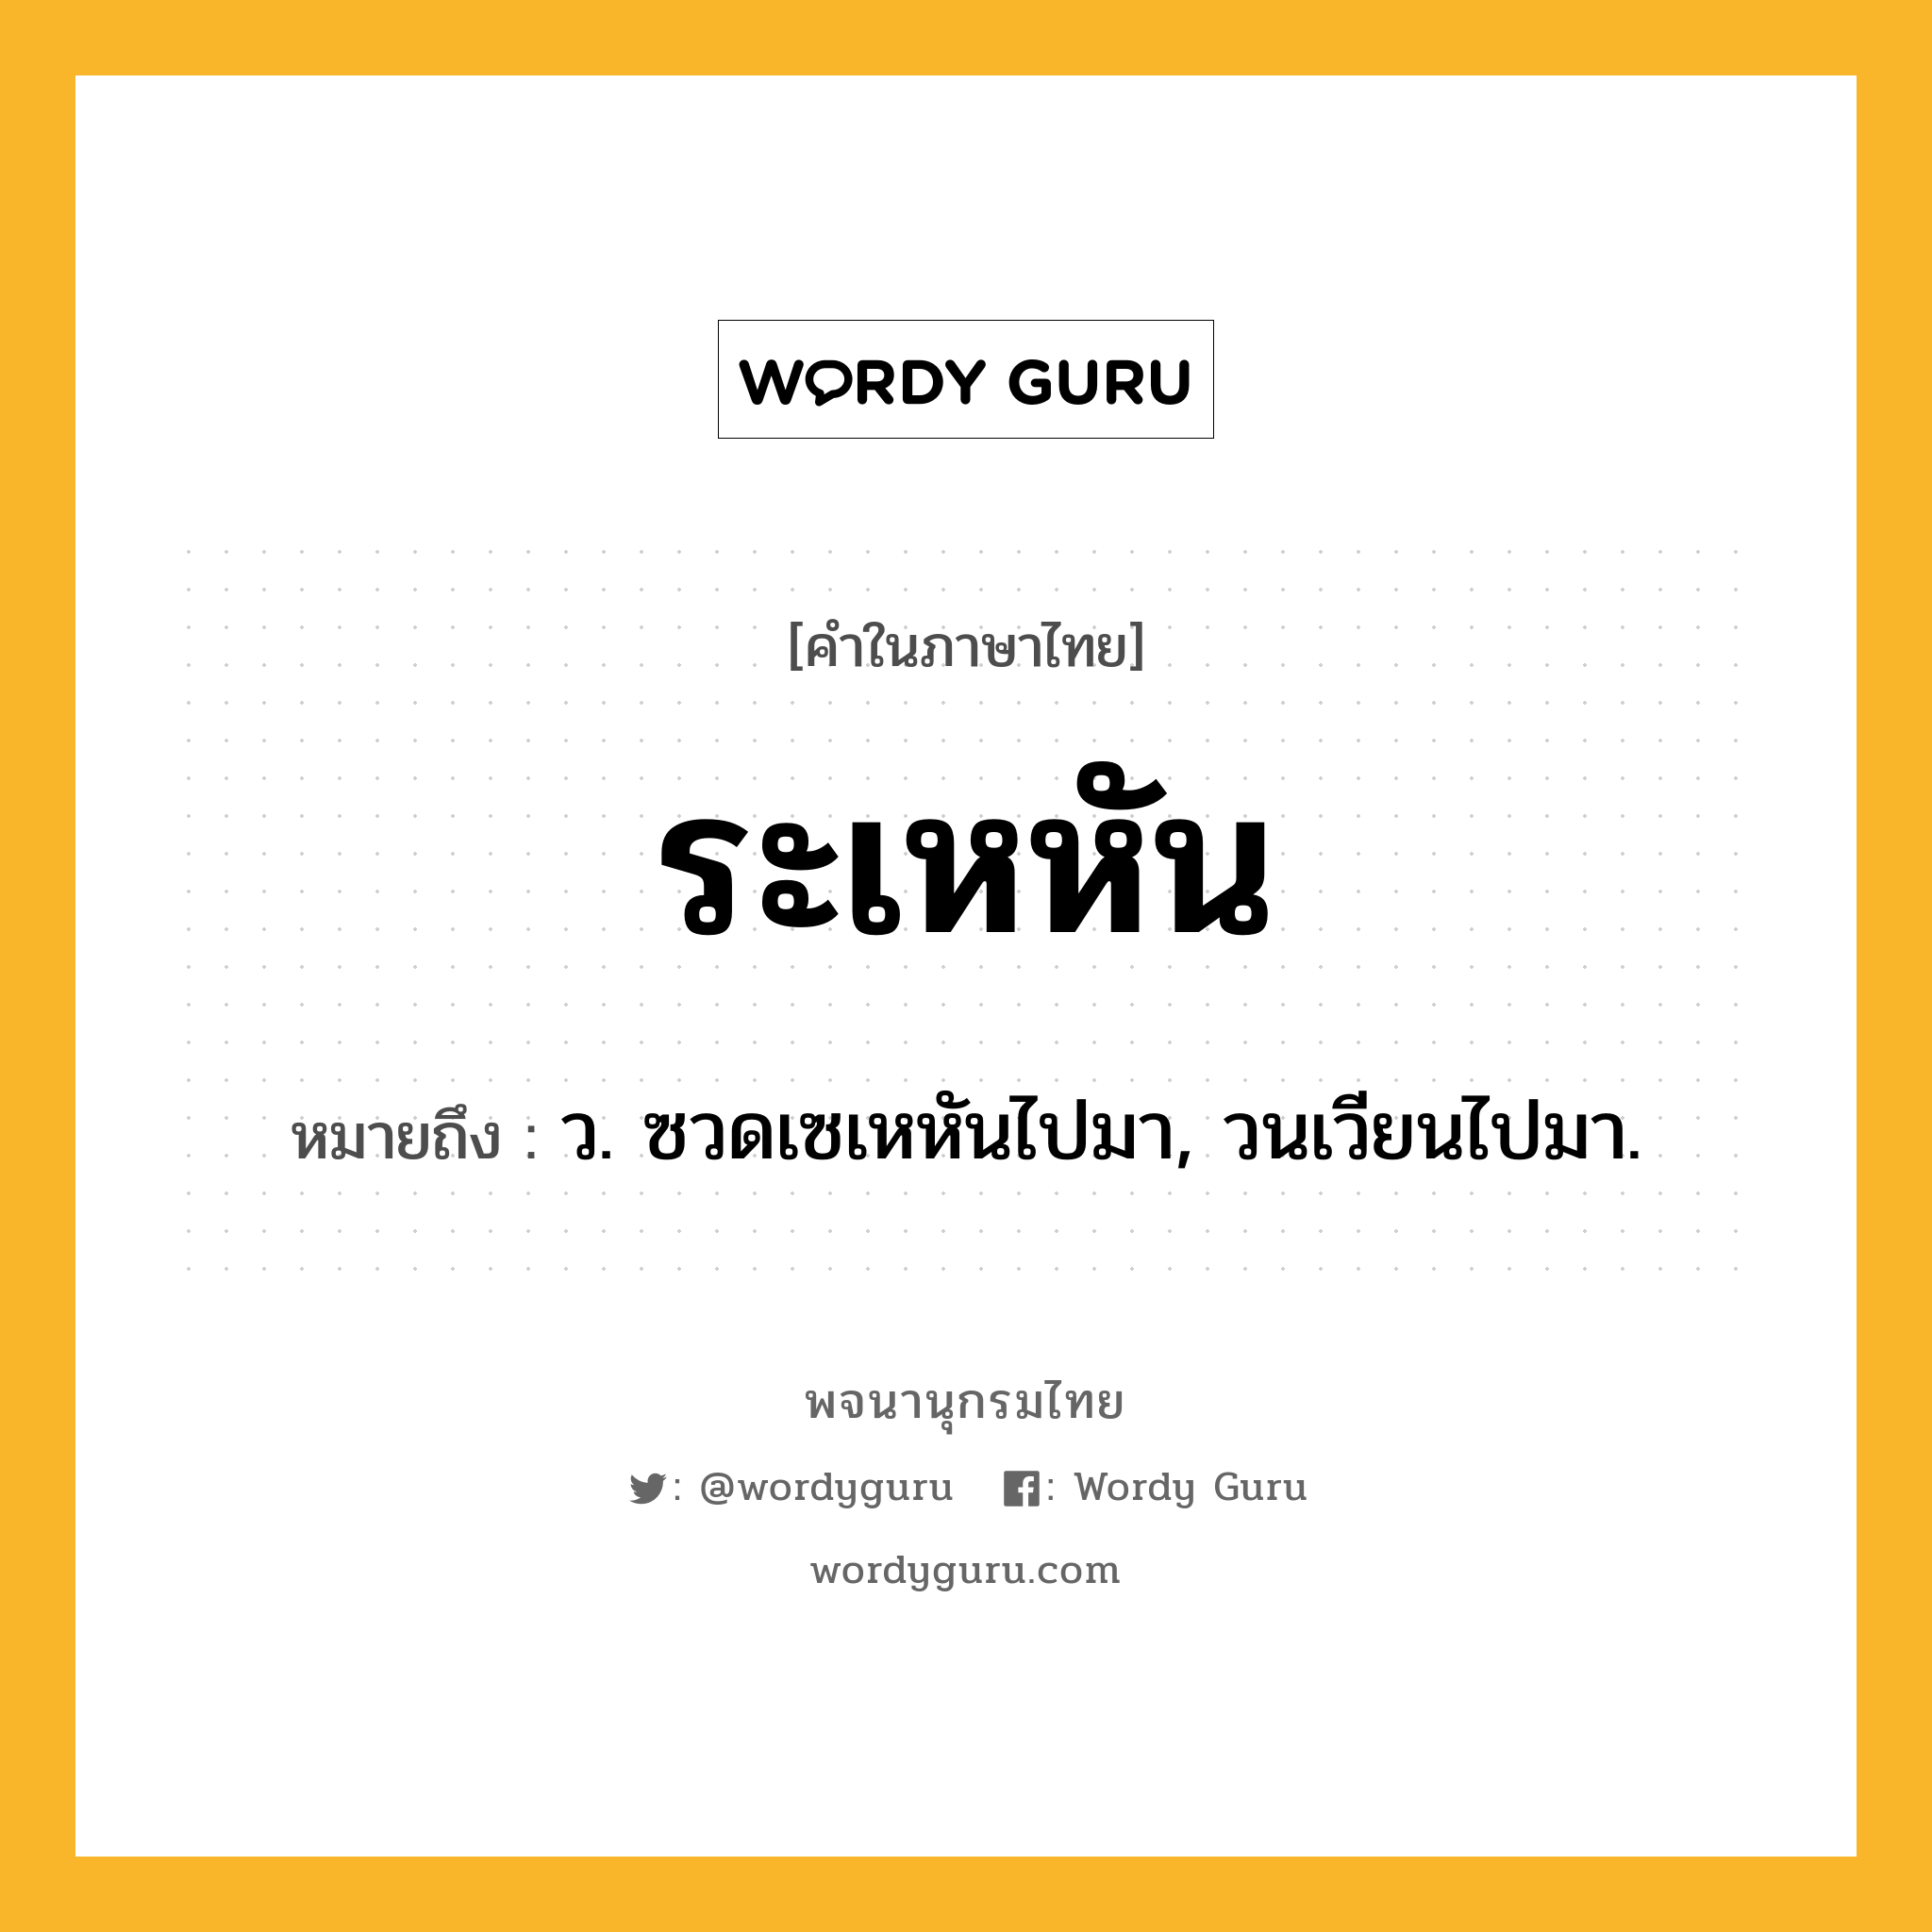 ระเหหัน หมายถึงอะไร?, คำในภาษาไทย ระเหหัน หมายถึง ว. ซวดเซเหหันไปมา, วนเวียนไปมา.